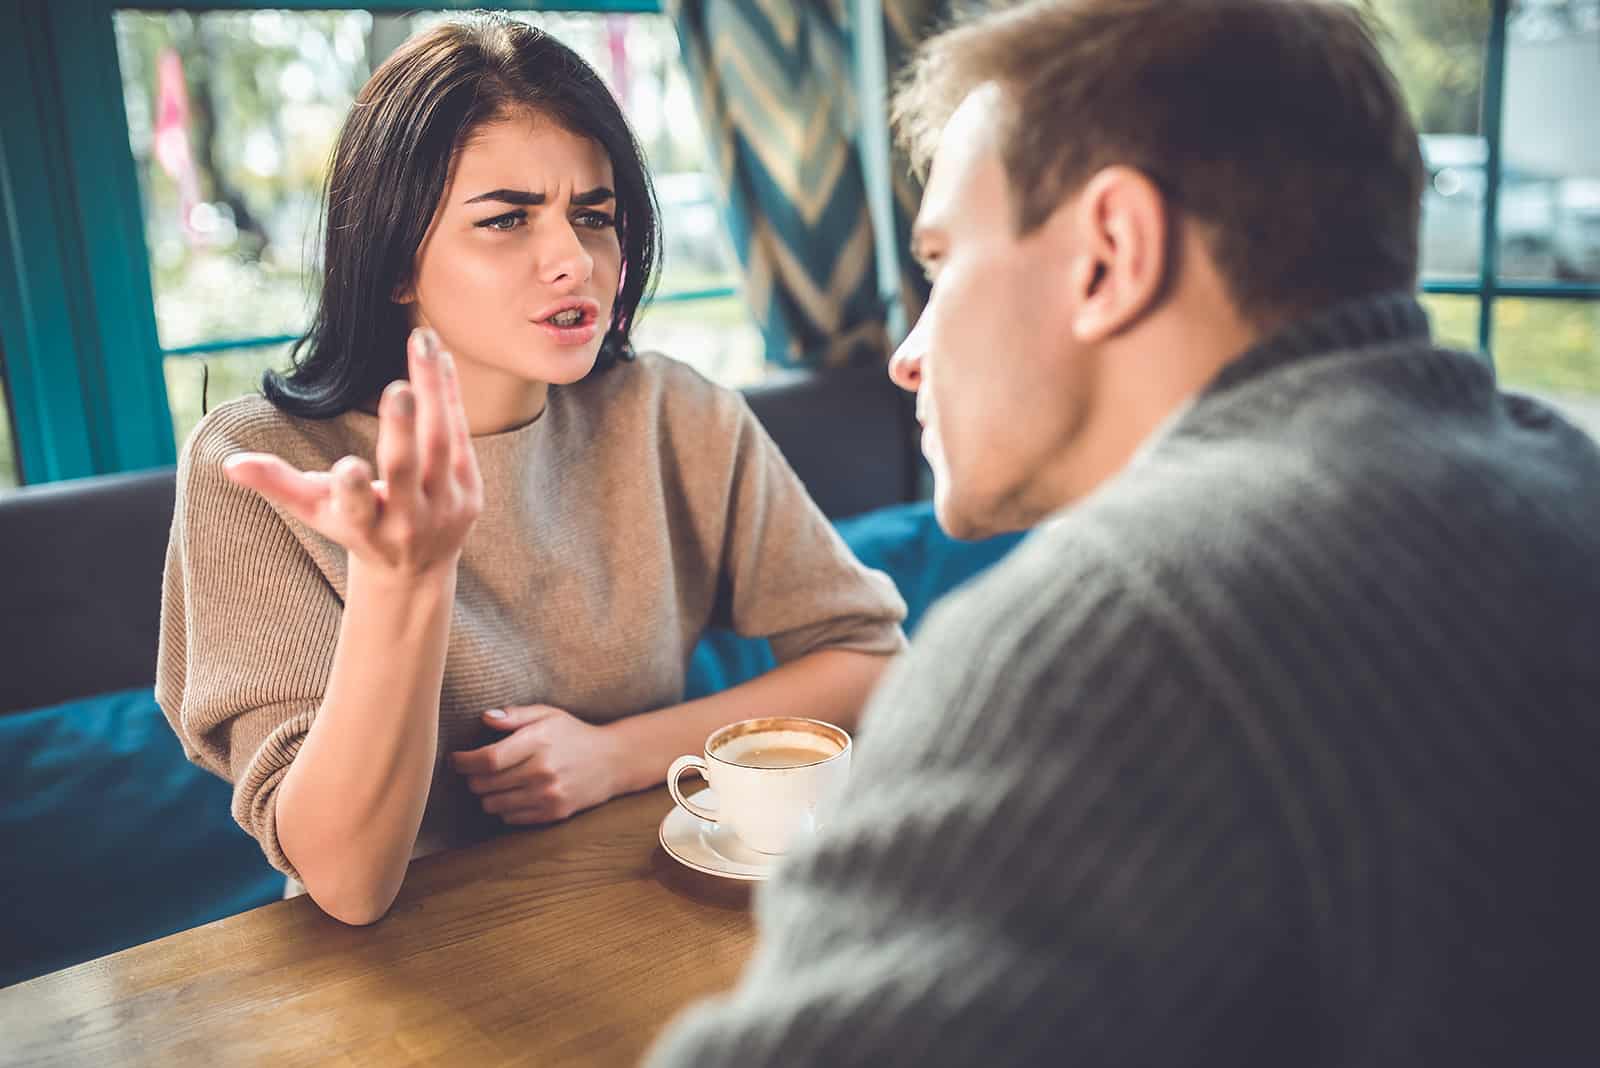 Ein Mann und eine Frau streiten sich im Restaurant